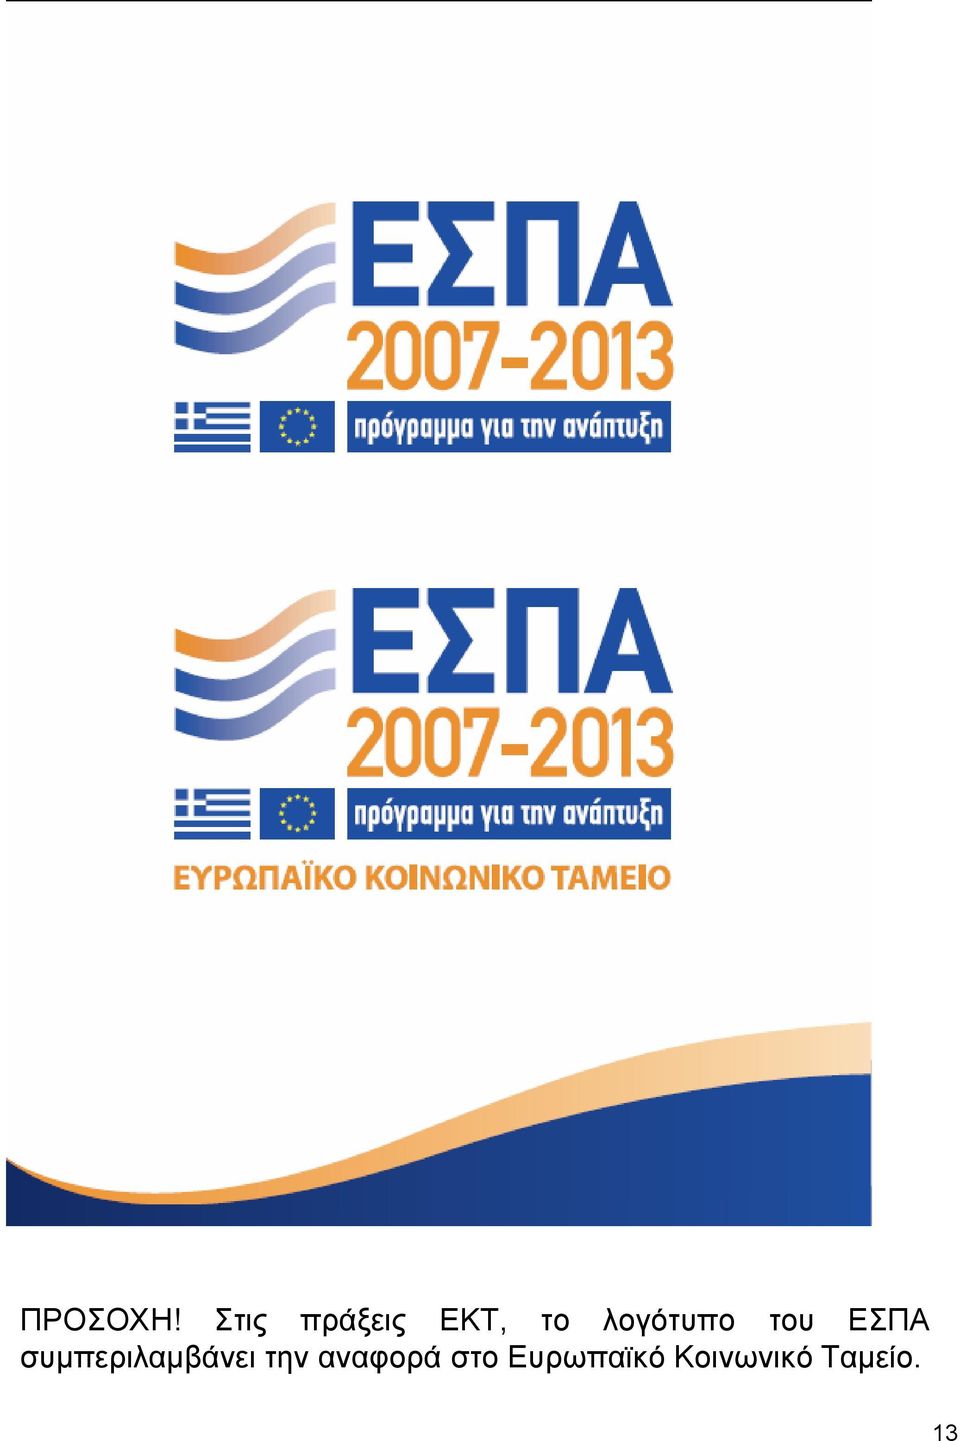 λογότυπο του ΕΣΠΑ